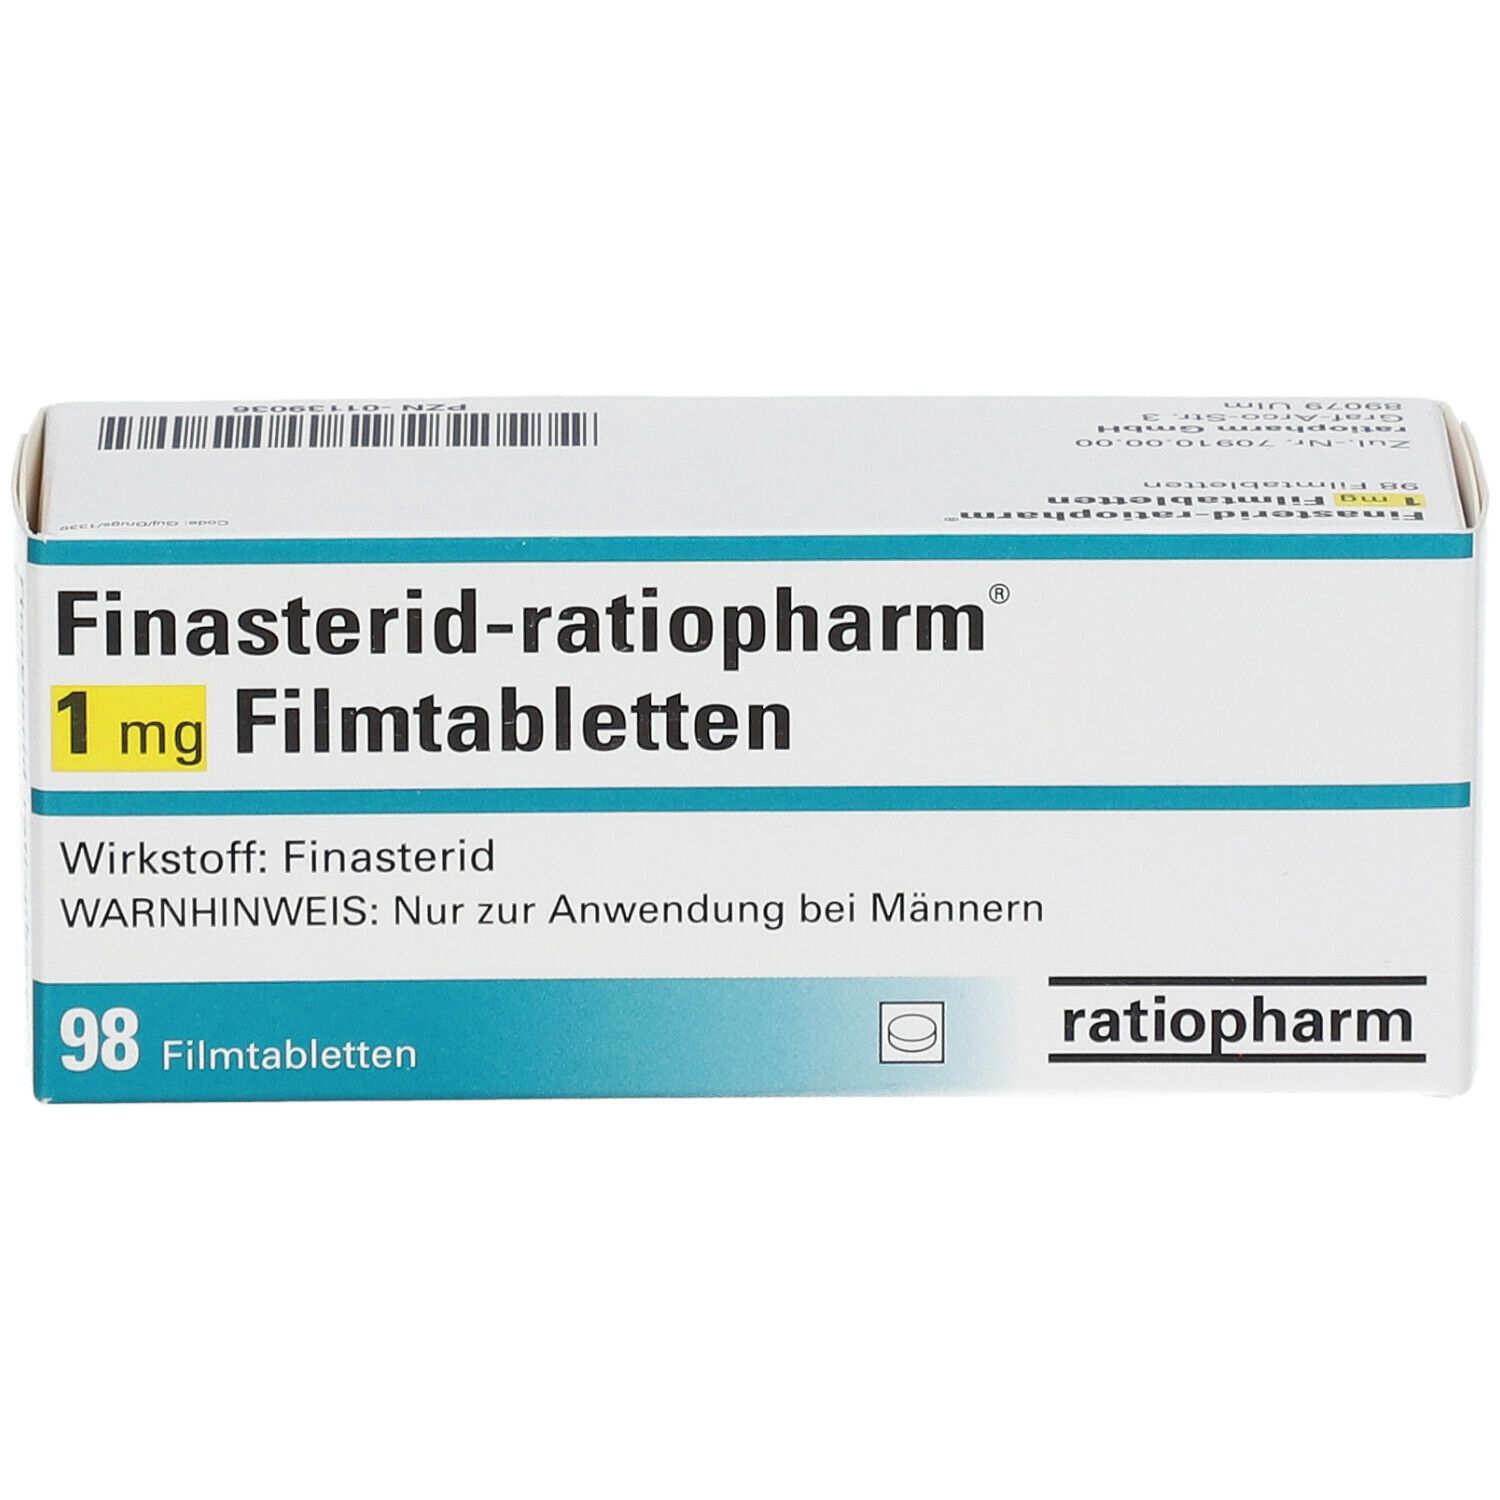 Finasterid-ratiopharm® 1 mg